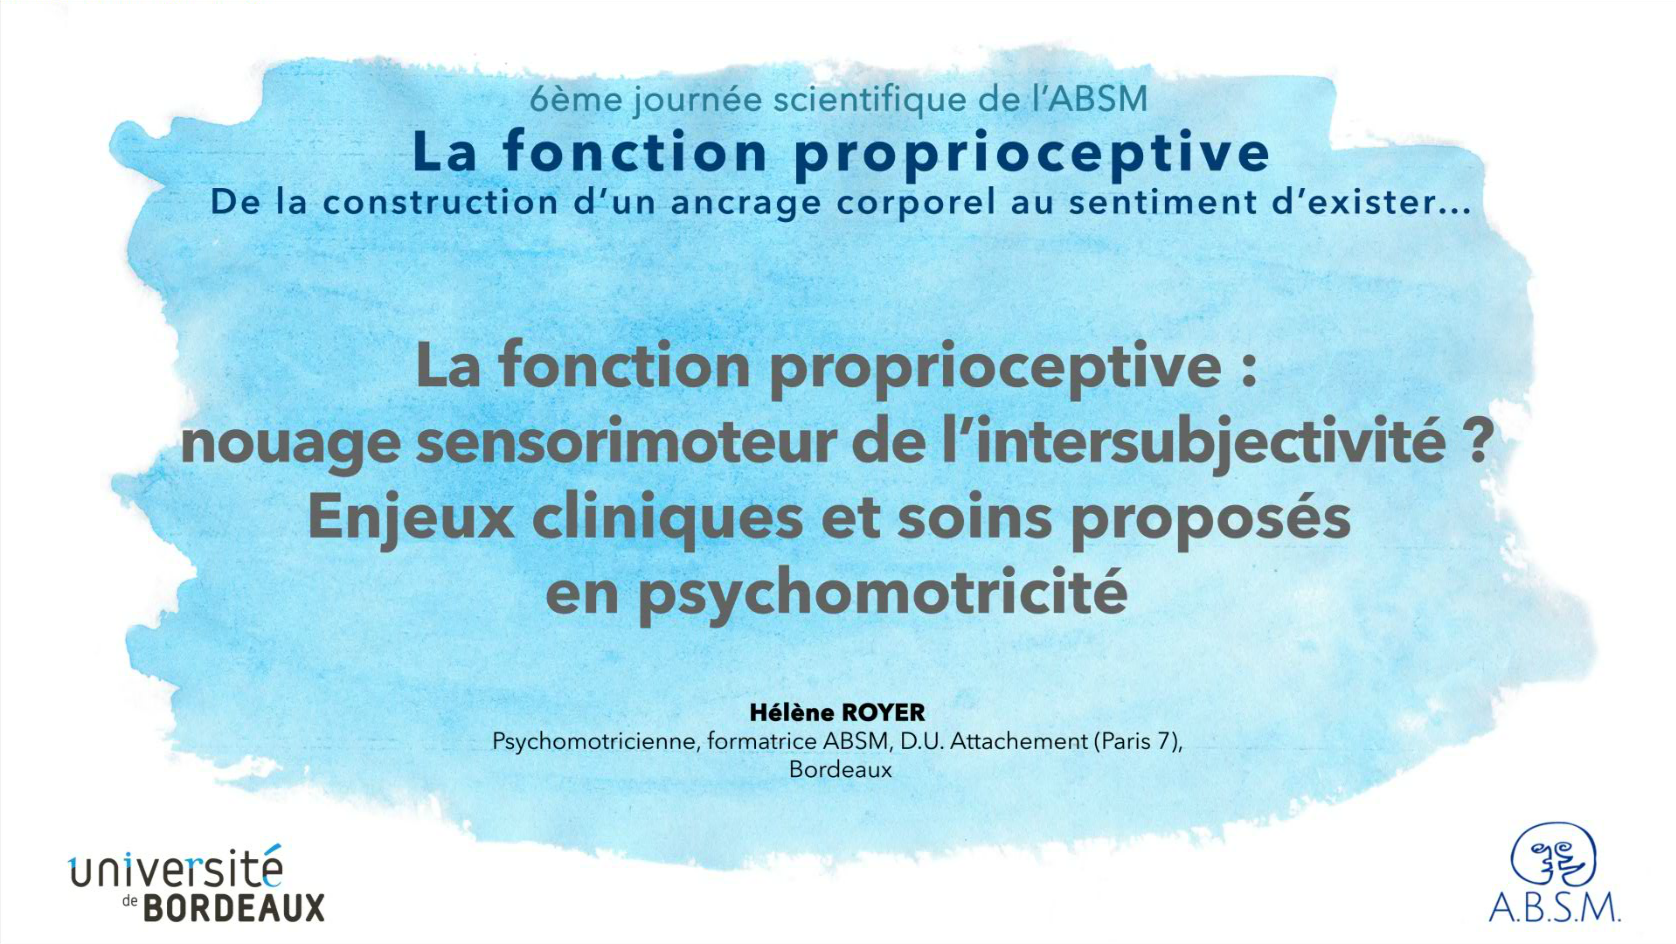 La fonction proprioceptive: nouage sensorimoteur de l’intersubjectivité ? Enjeux cliniques et soins proposés en psychomotricité